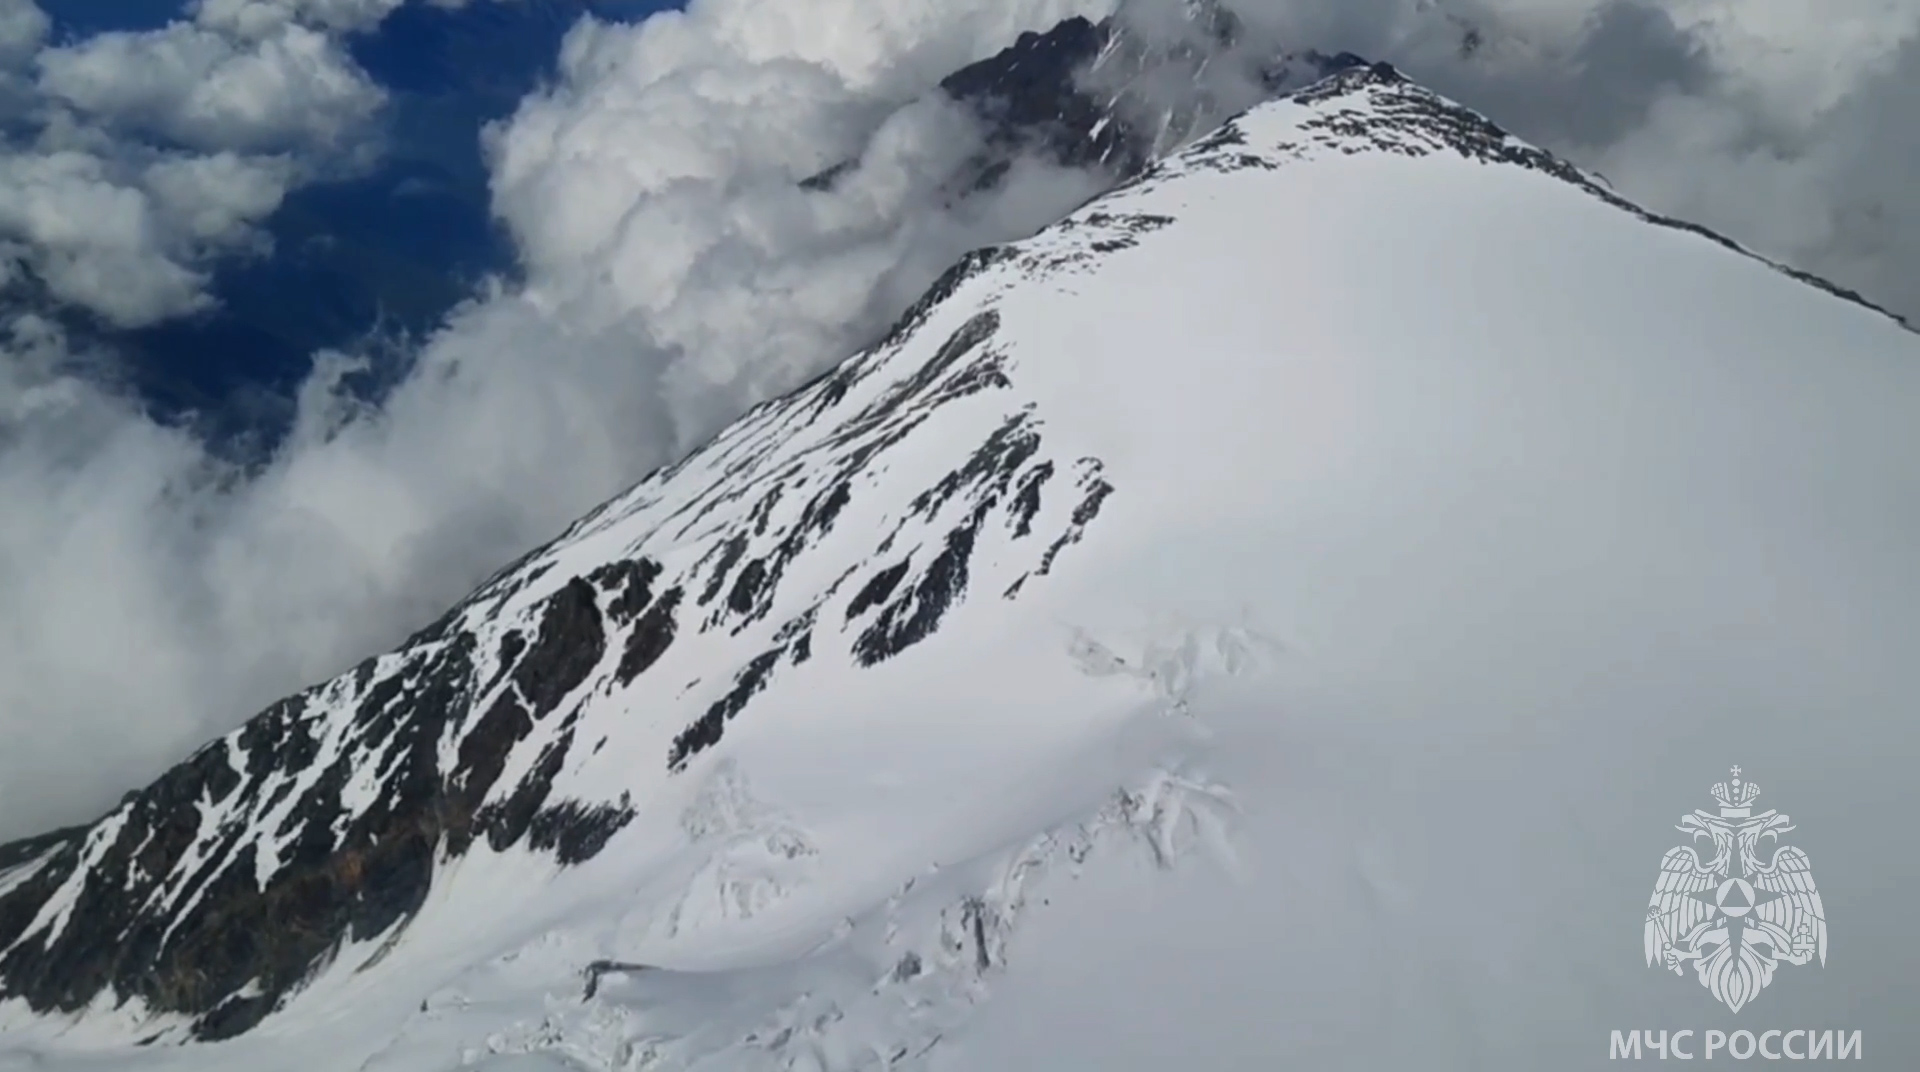 Поиски пропавшего на Казбеке альпиниста на вертолете продолжат завтра, пешая группа спасателей продолжает подъем – МЧС